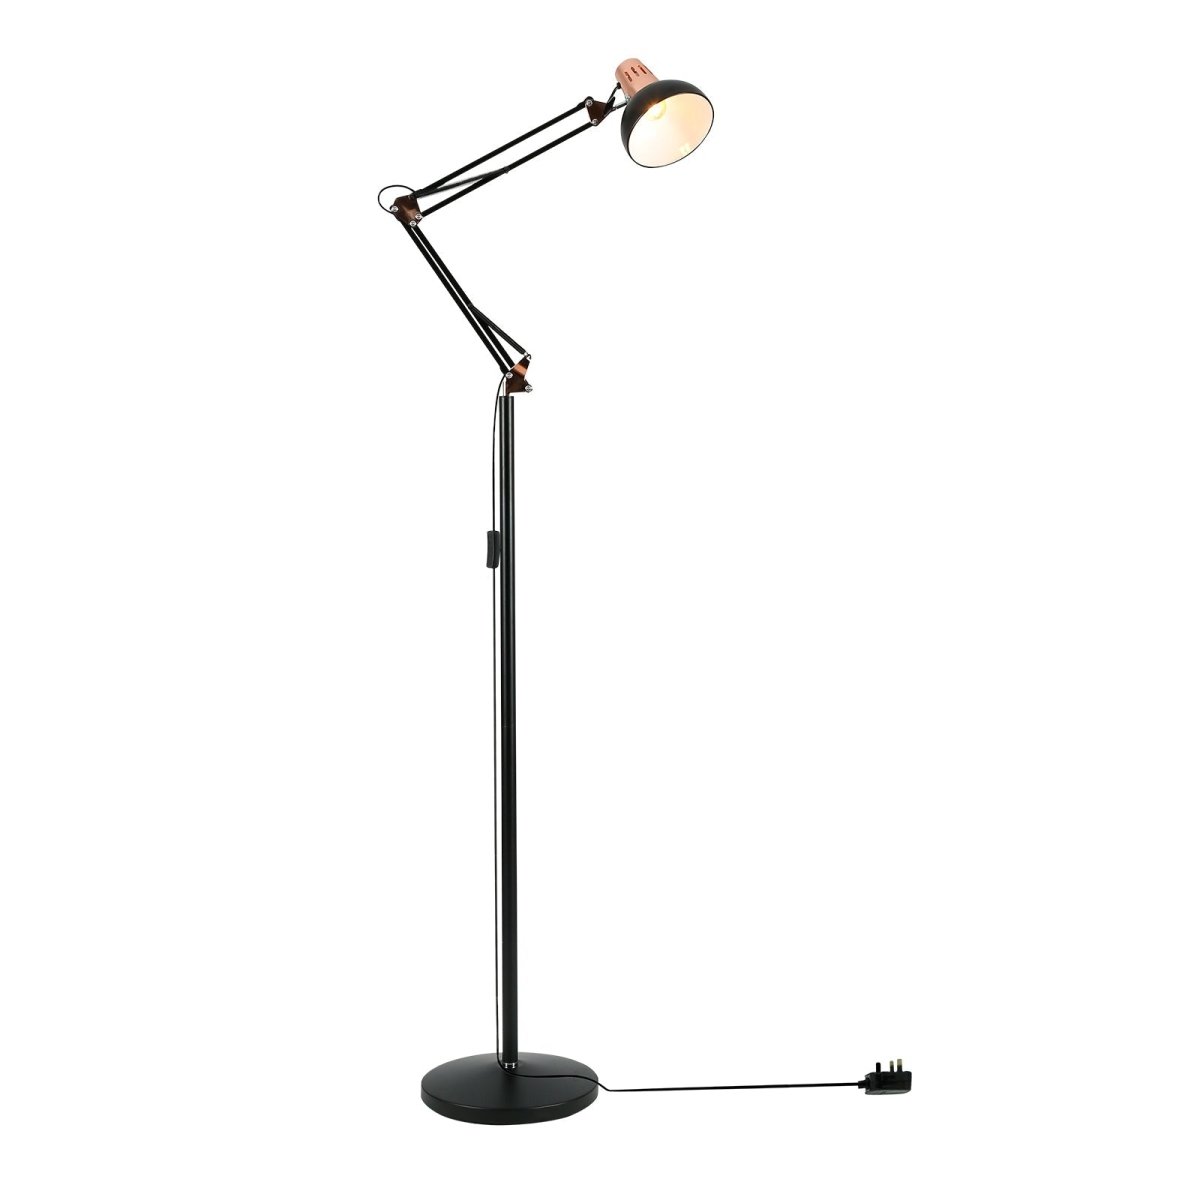 Main image of Swing Arm Architect Model Floor Lamp E27 Black and Copper | TEKLED 130-03349